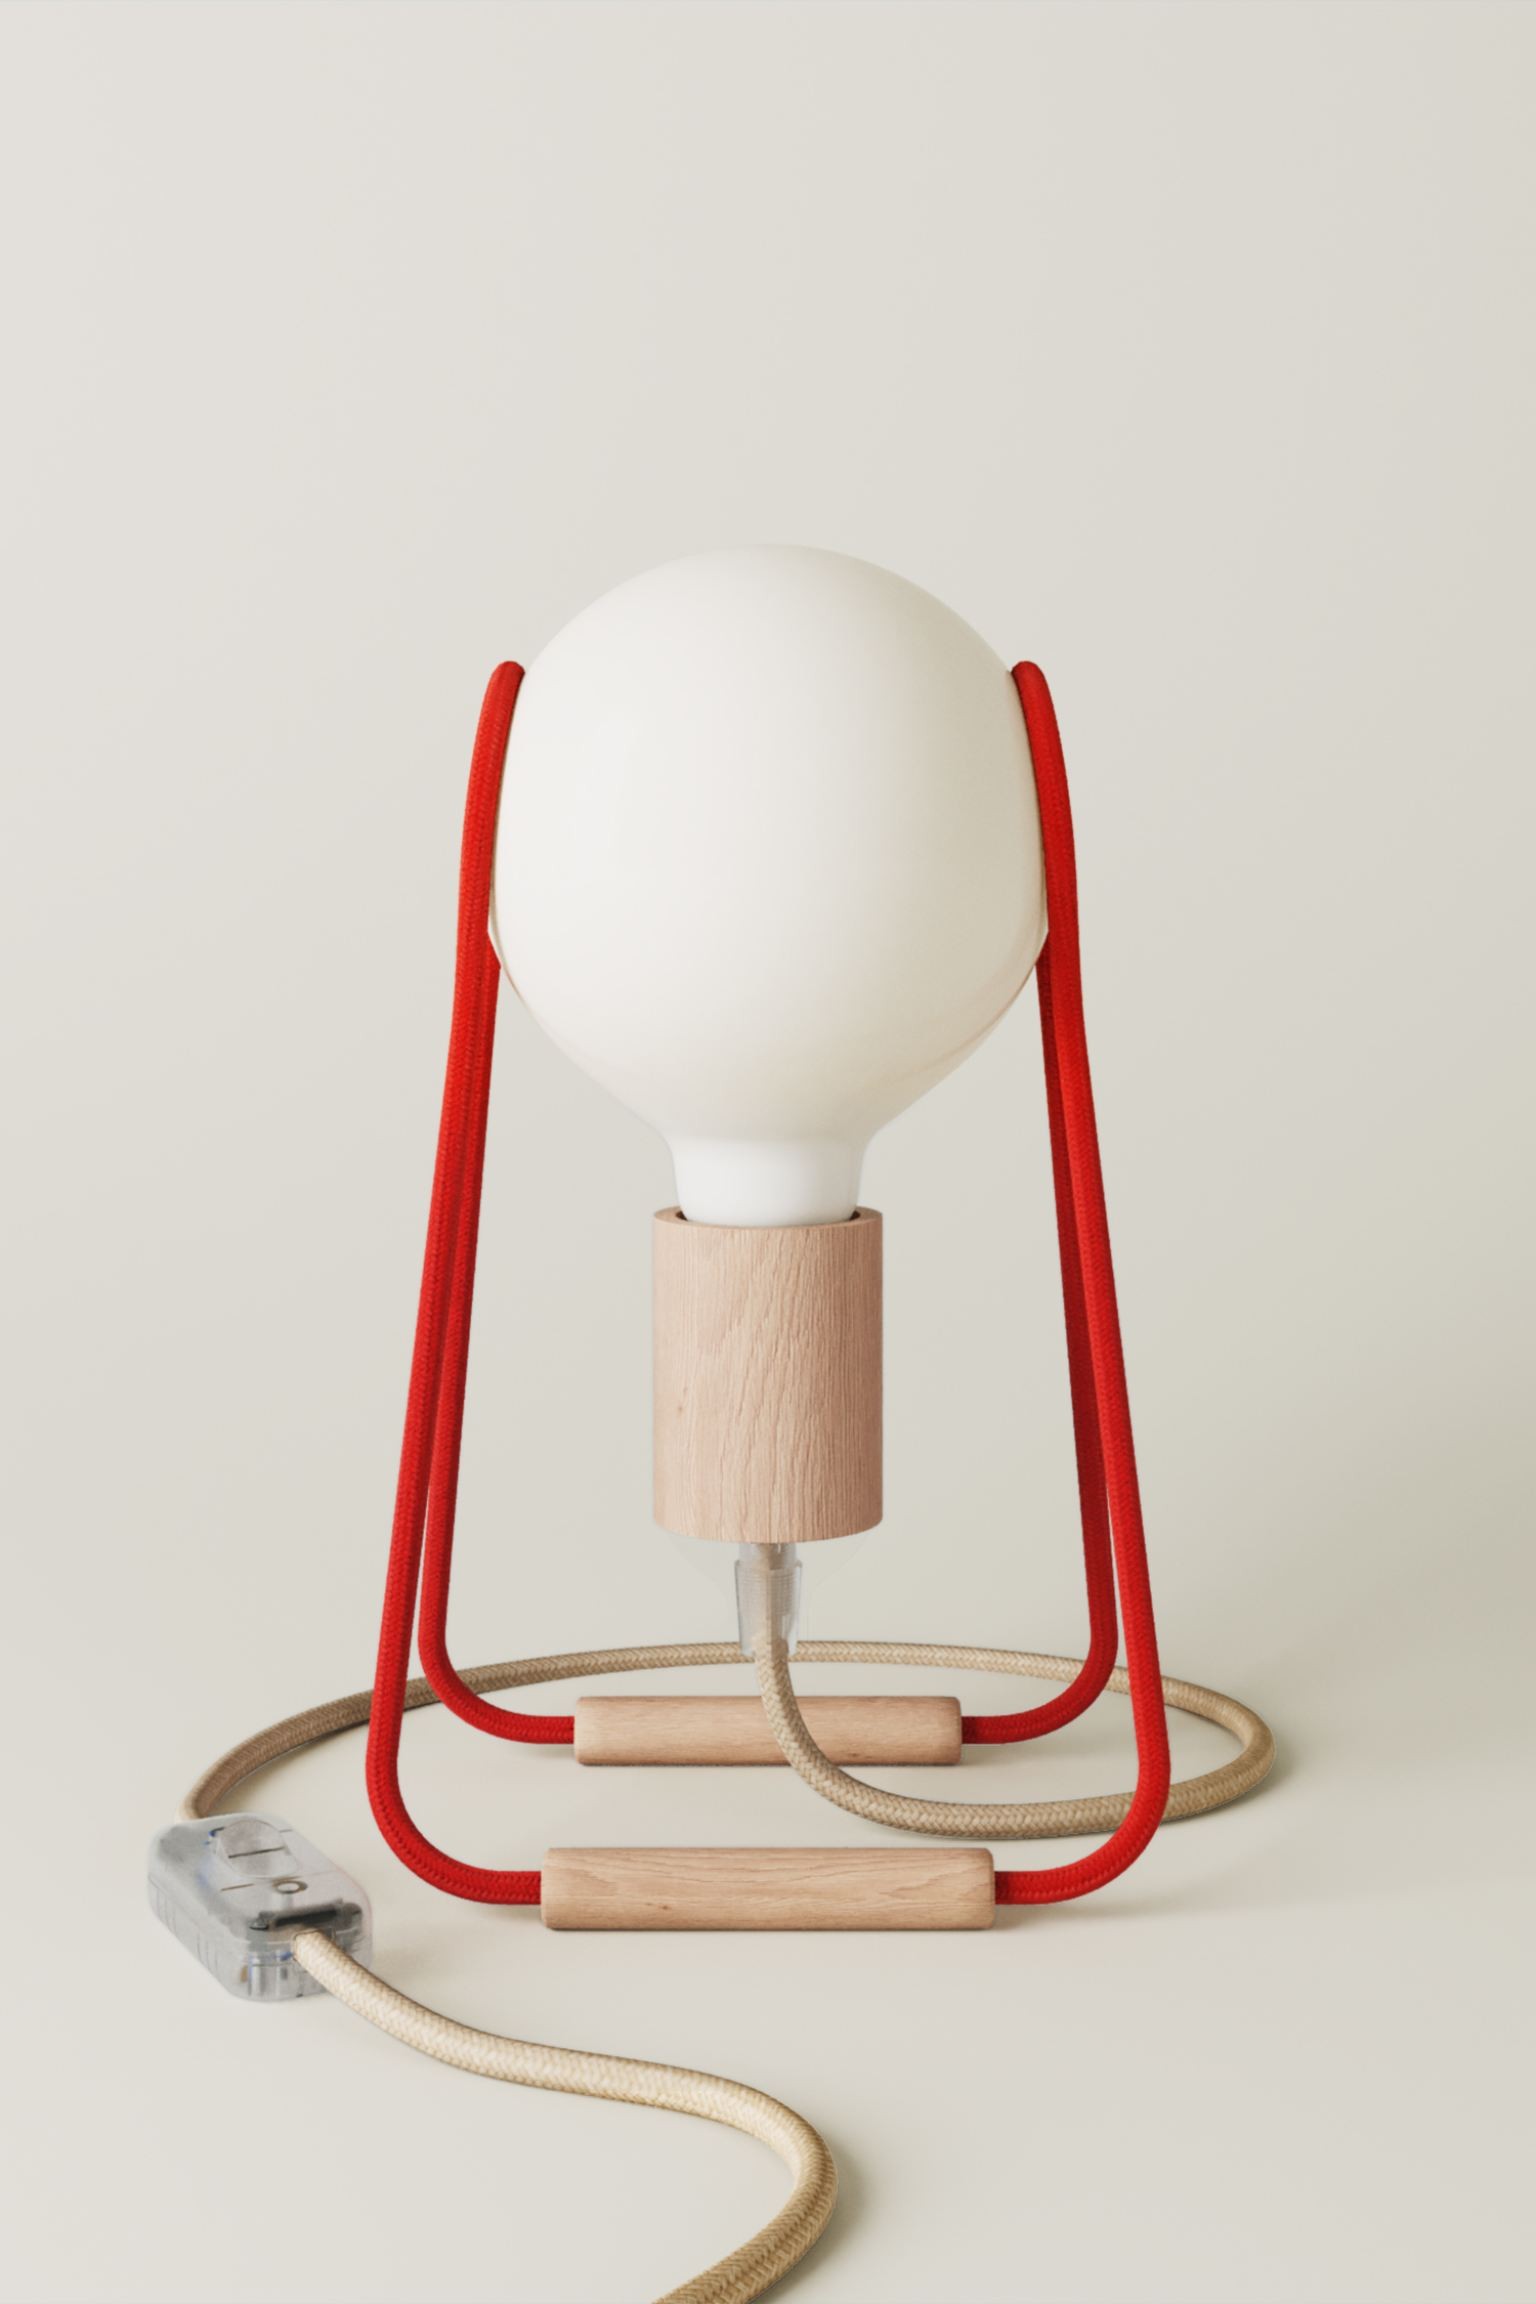 Creative-Cables Деревянная настольная лампа Taché с лампочкой - красный/натуральное дерево 1204365001 | 1204365001